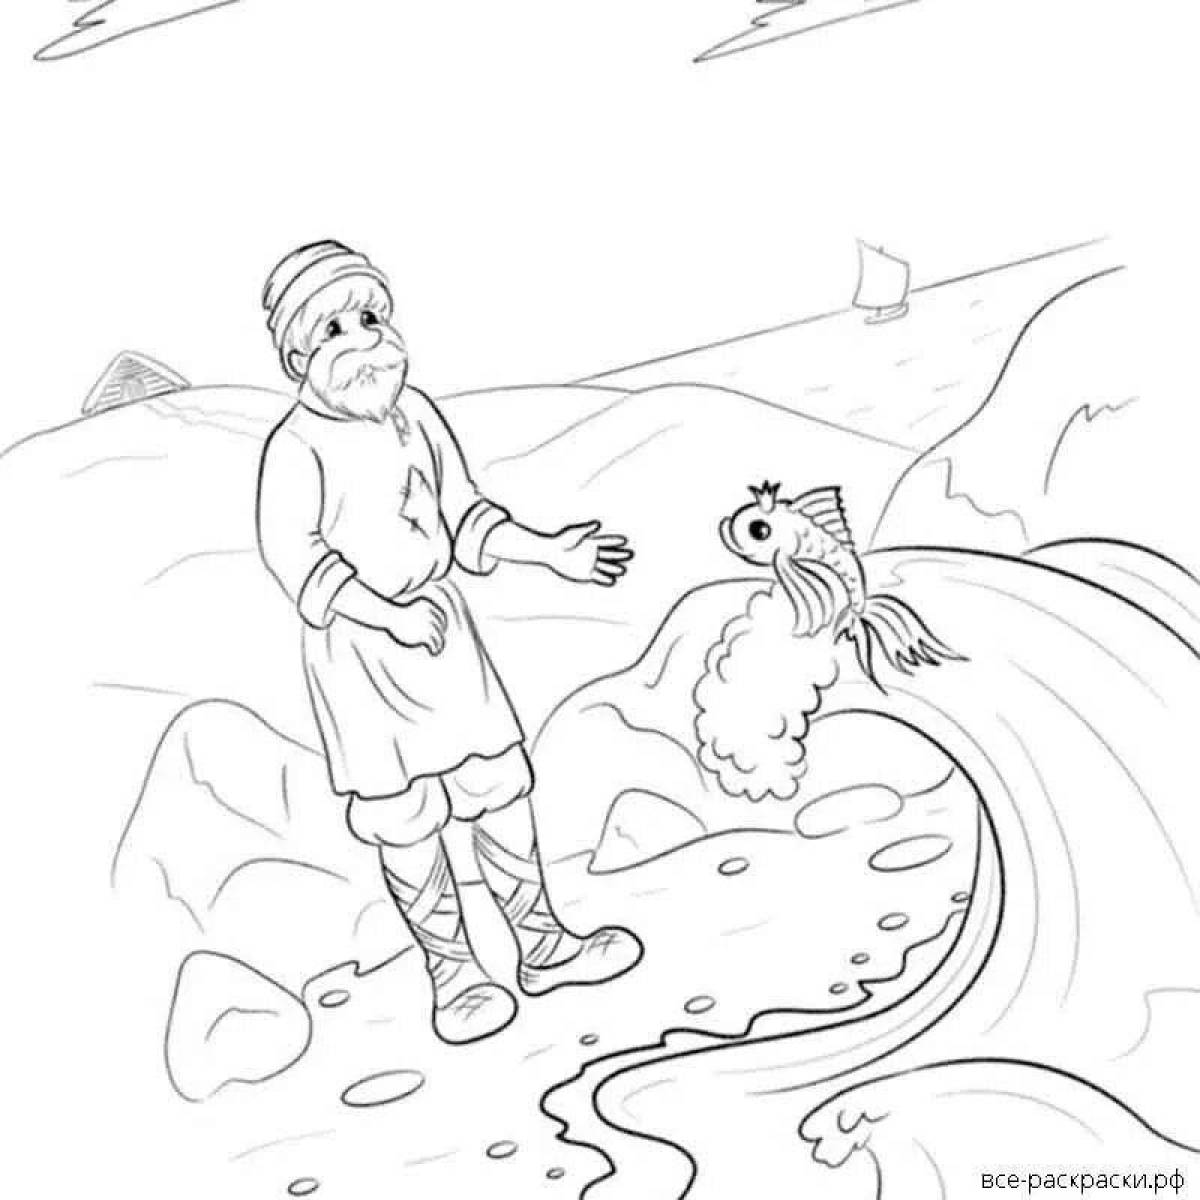 Рисунки к сказке Пушкина о рыбаке и рыбке